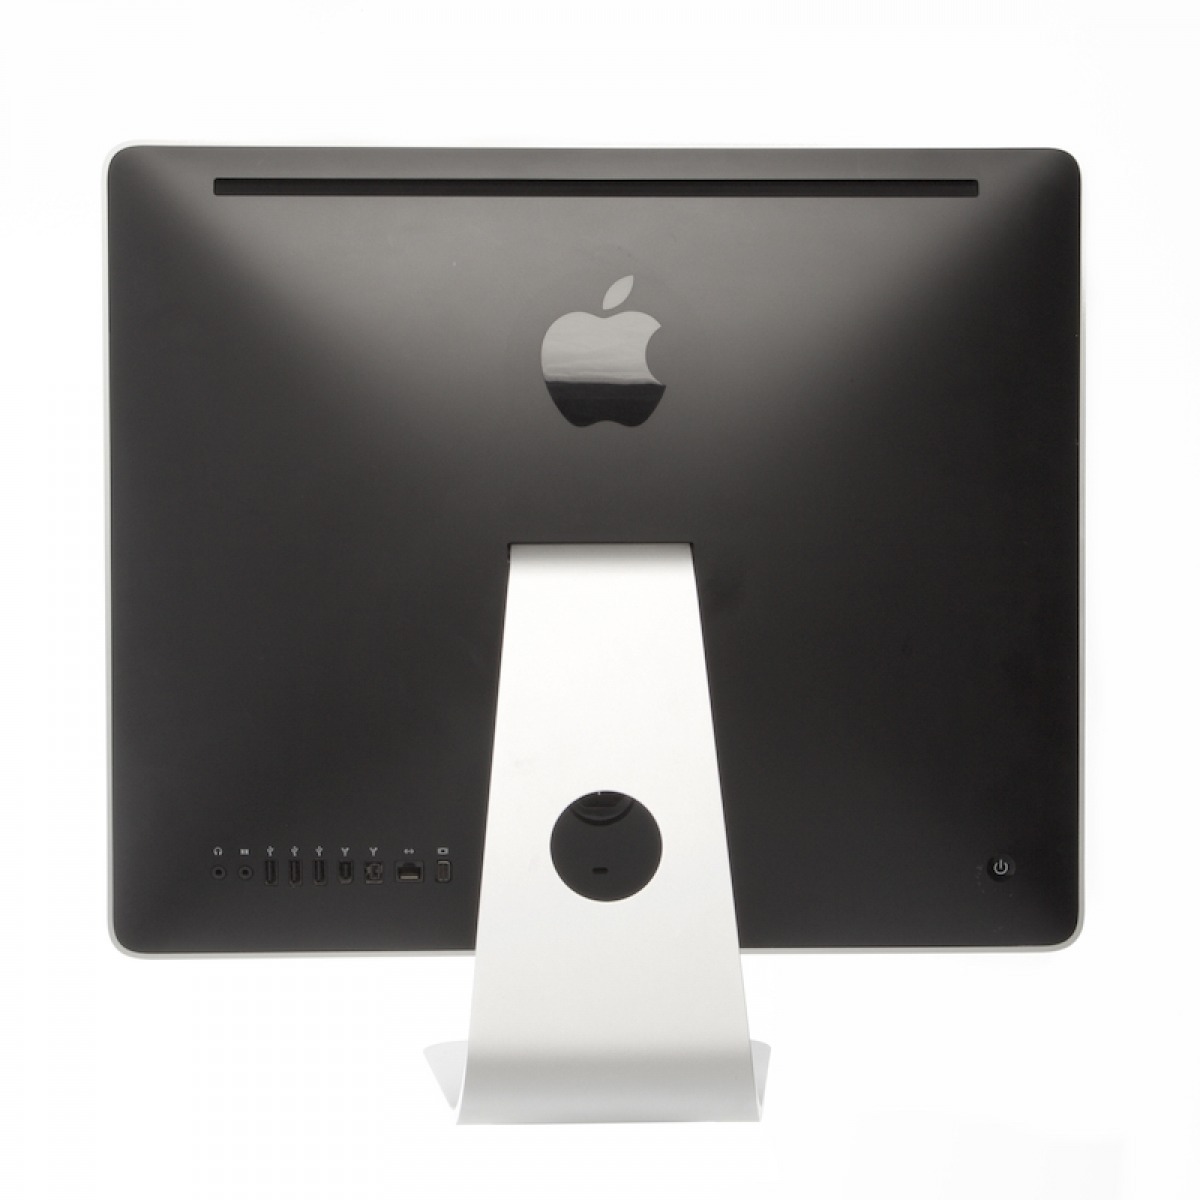 آل این وان استوک آی مک اپل 21.5 اینچ مدل Apple iMac A1224